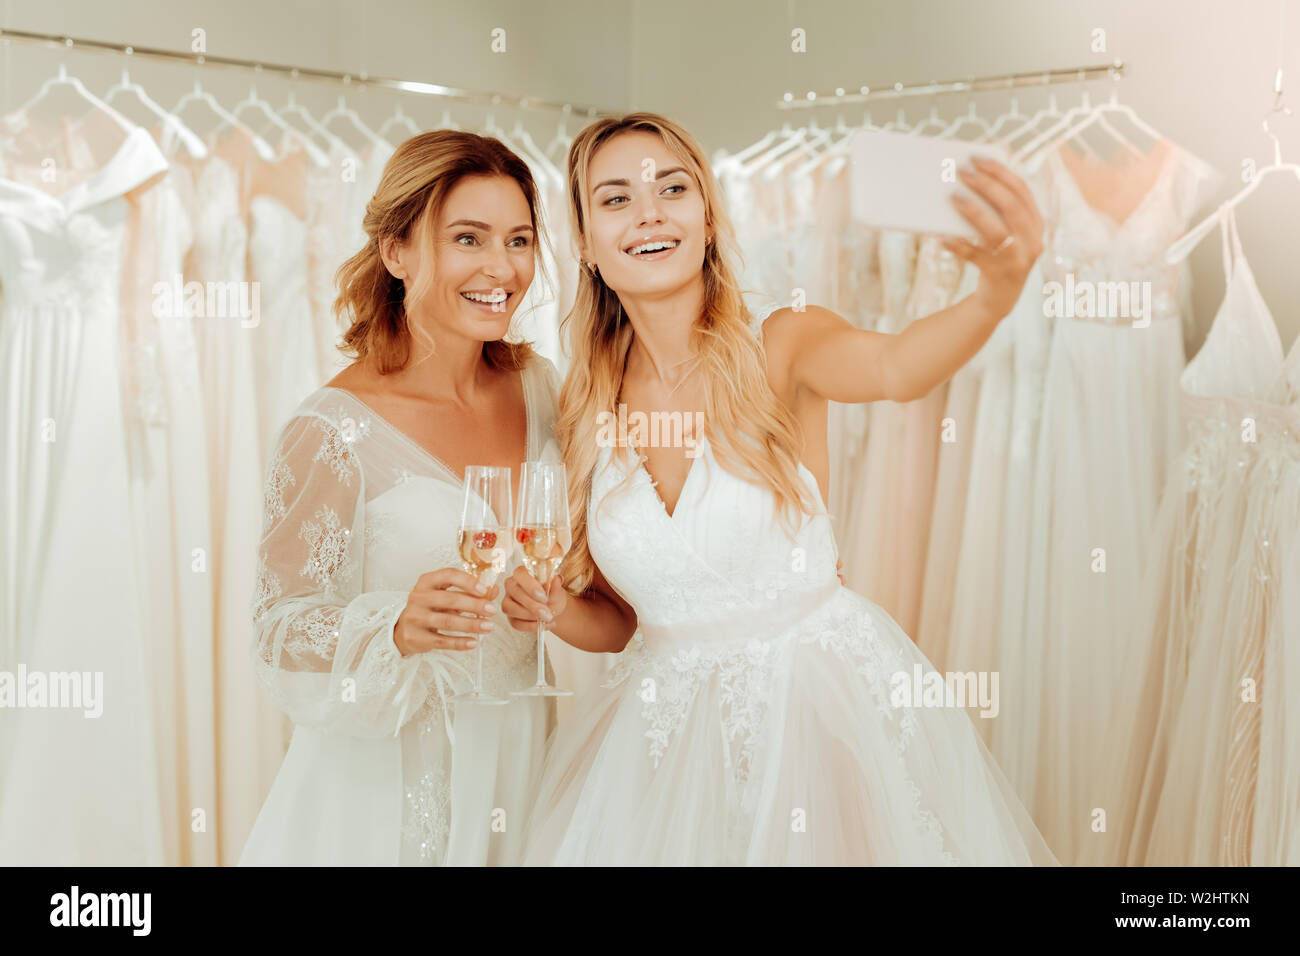 Zwei glückliche Frauen selfies in Brautkleider. Stockfoto